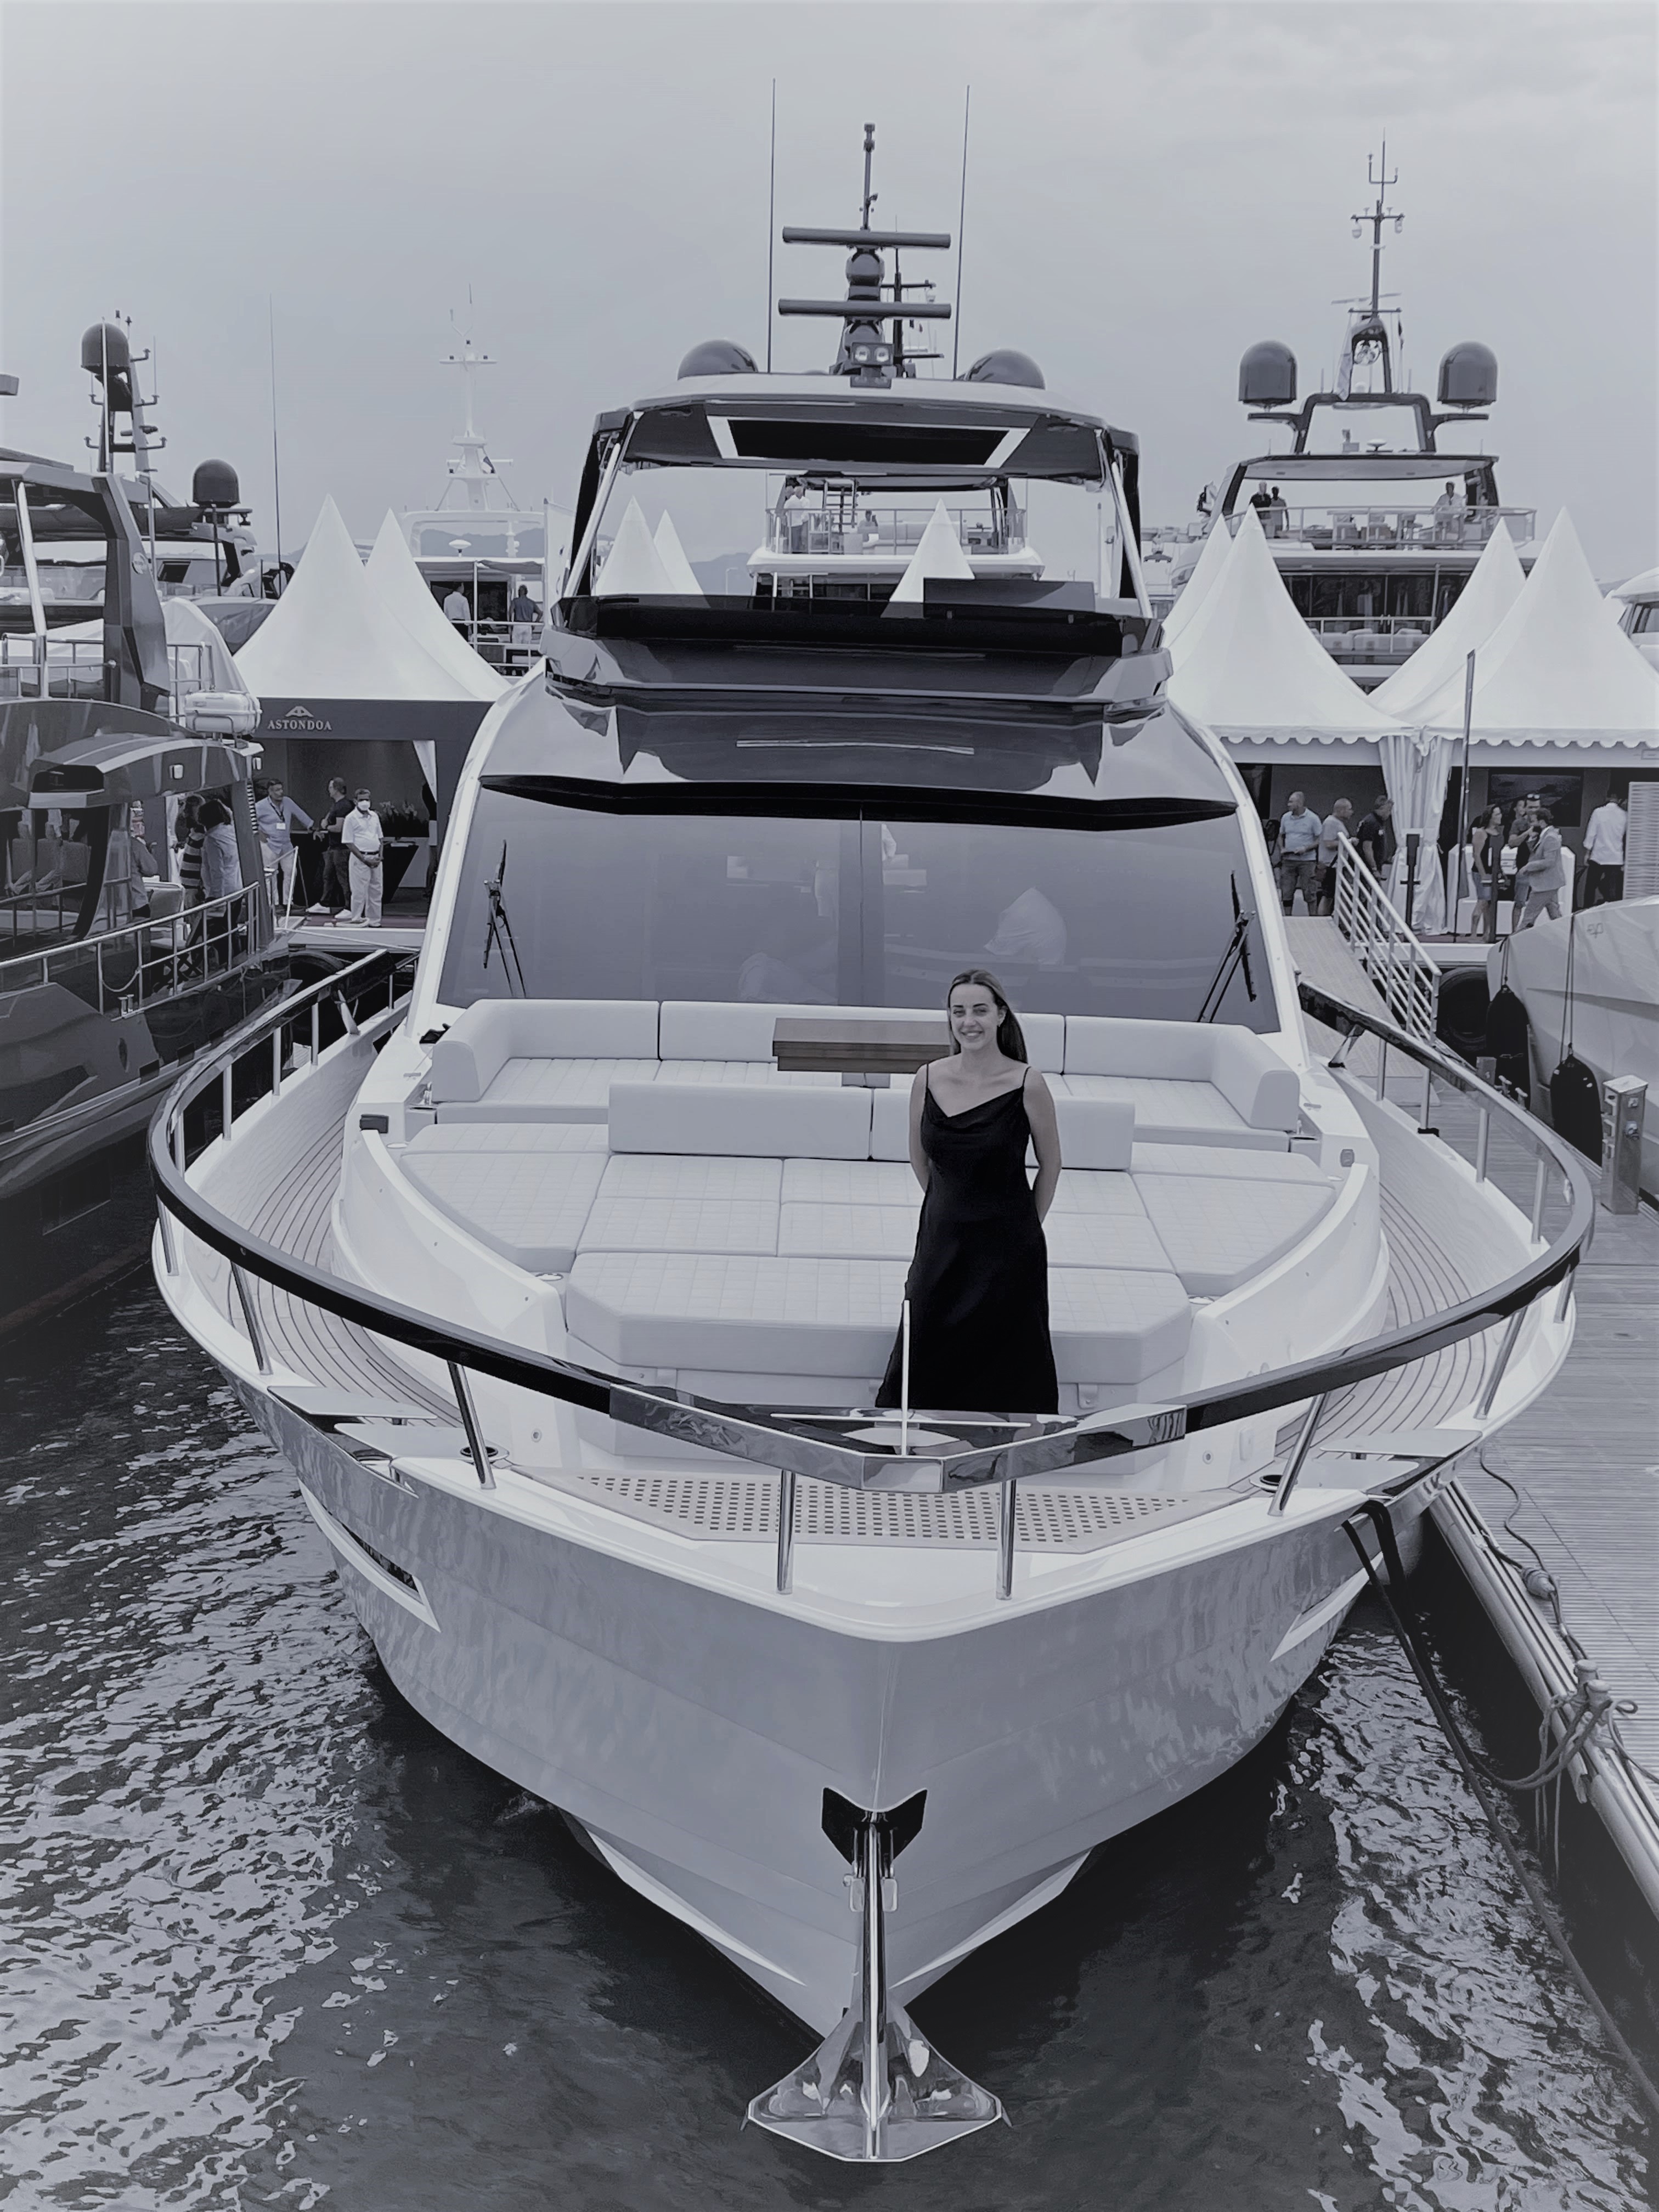 Nos despedimos de Cannes Yachting Festival felices de haber compartido el fruto de nuestro trabajo y la ilusión para seguir dando lo mejor